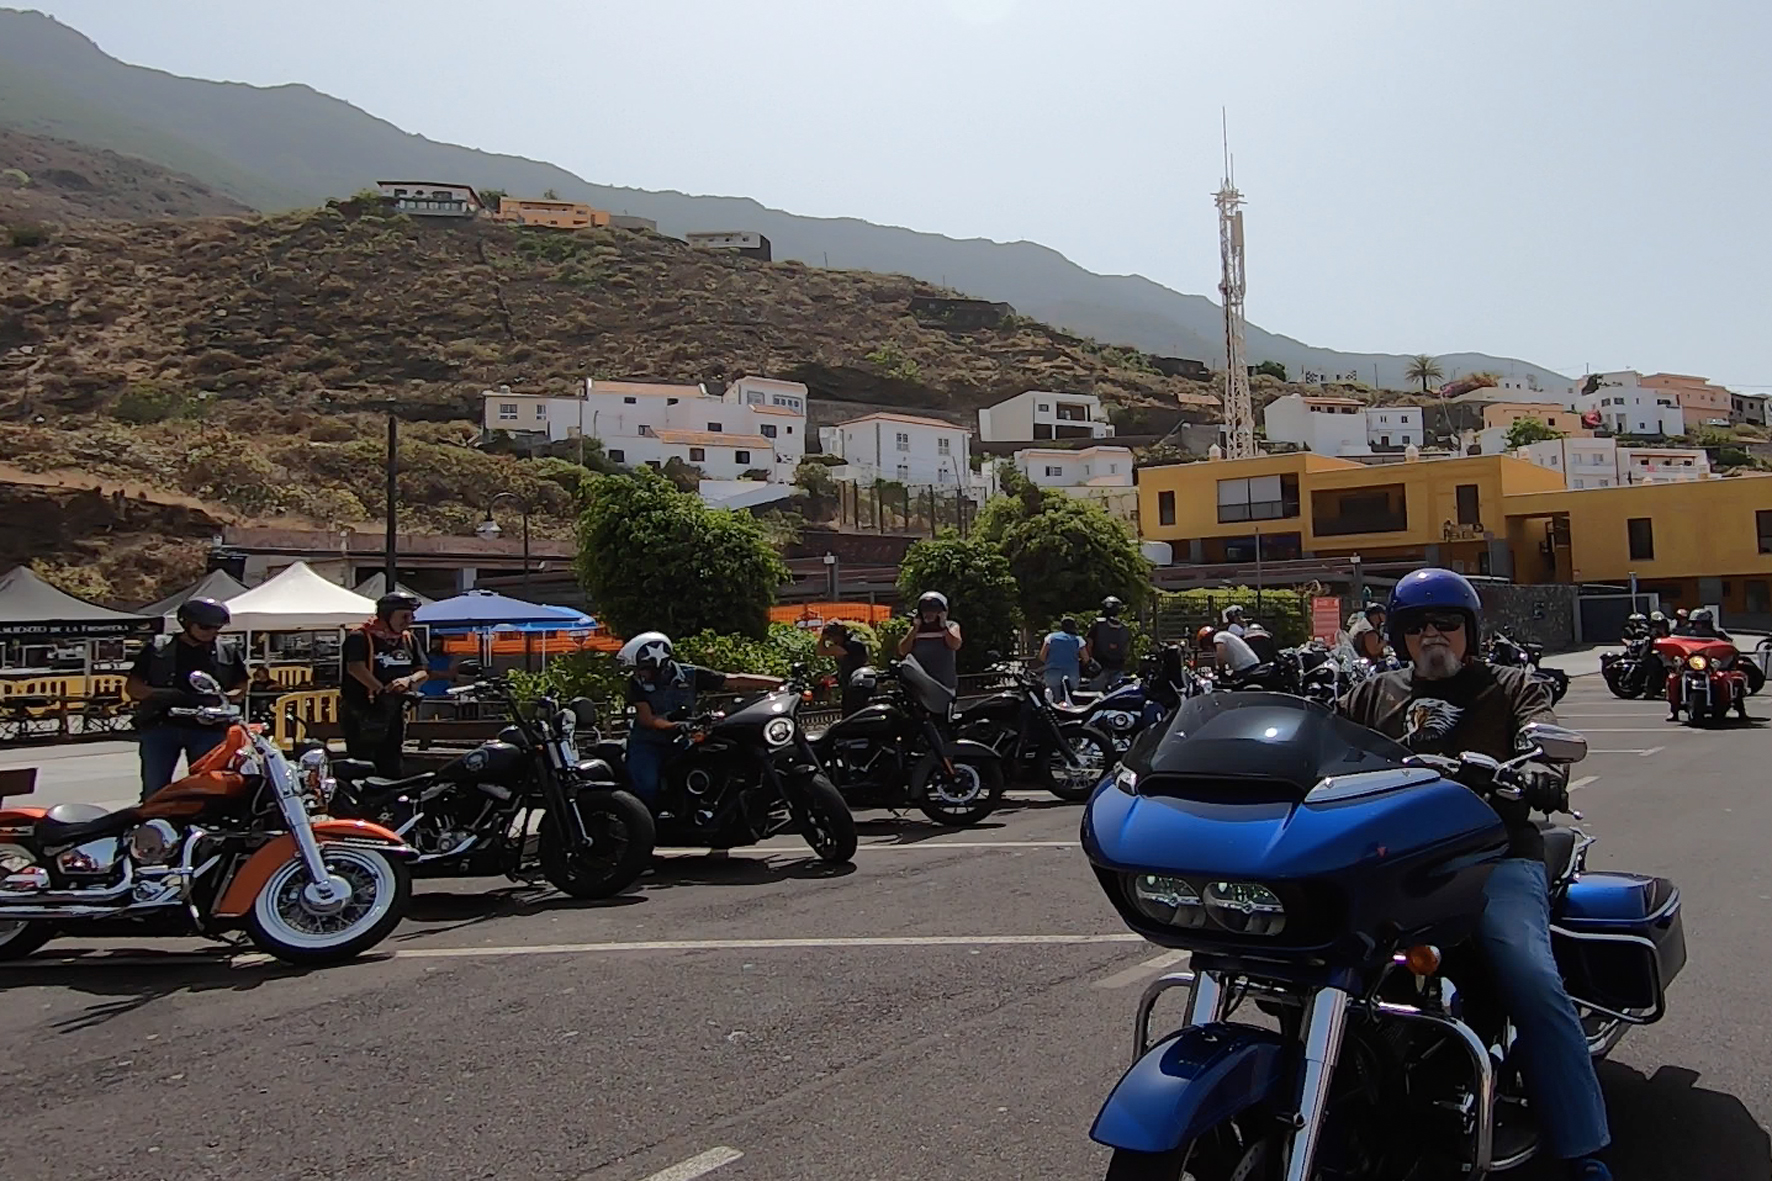 Más de 50 motocicletas Harley Dadvison participaron en la ruta “The End Route El Hierro Biker Fest”